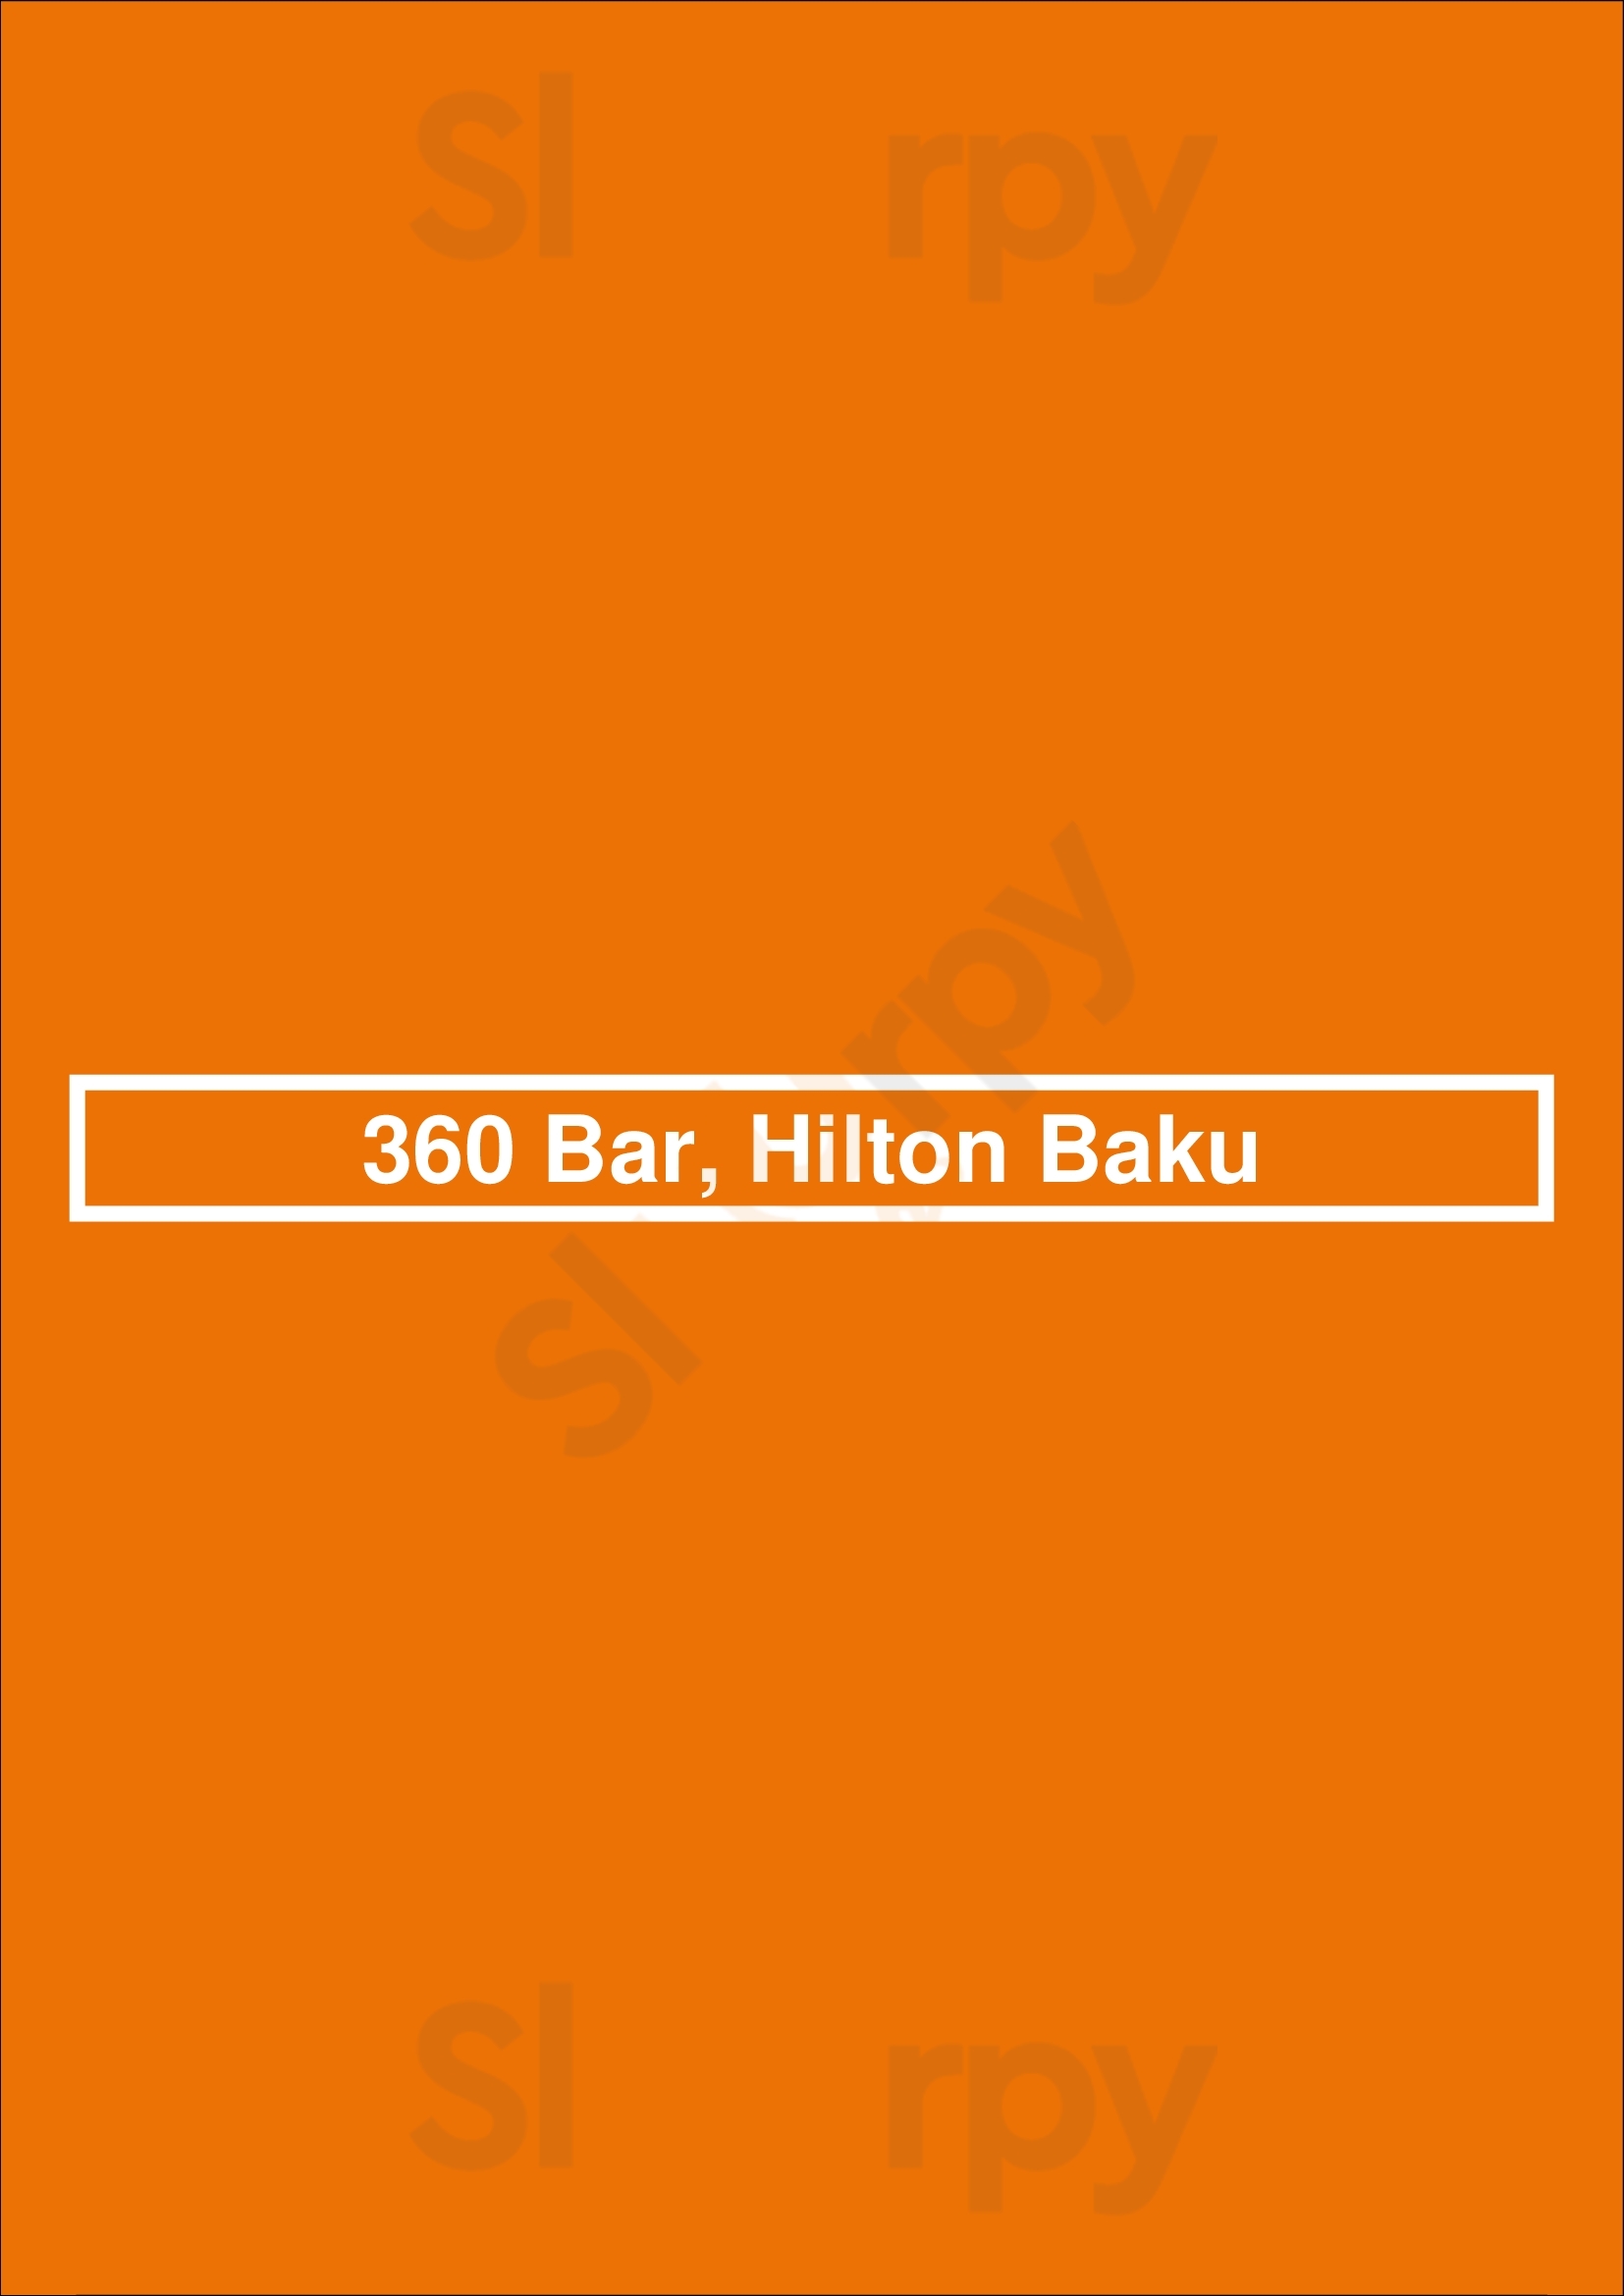 360 Bar Баку Menu - 1